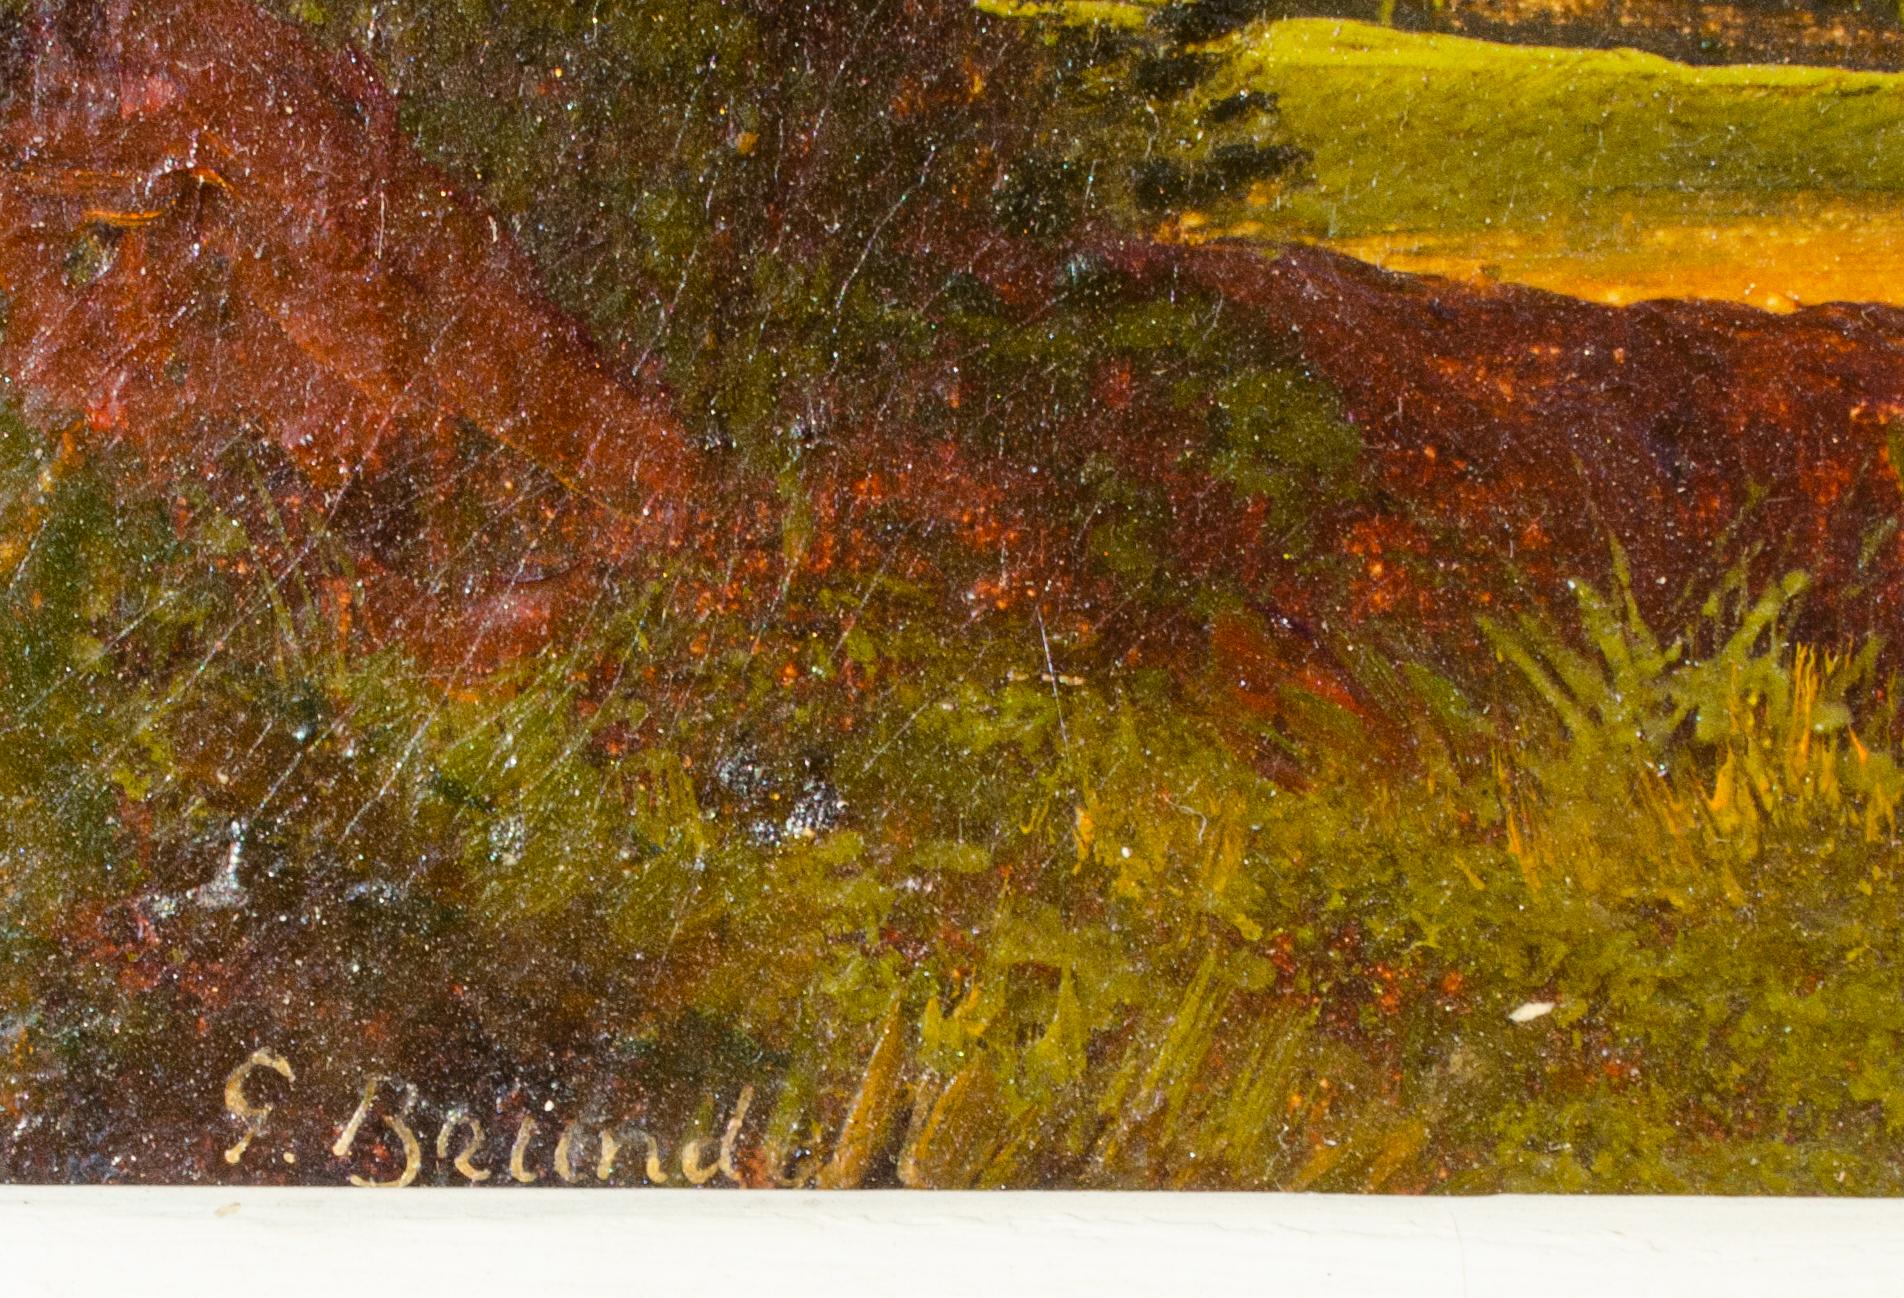 G. Brundell
Sans titre, A.I.C. Début du 20e siècle
Huile sur toile
Vue : 10 x 18 in.
Encadré : 19 7/8 x 27 7/8 x 2 in.
Signé en bas à gauche
